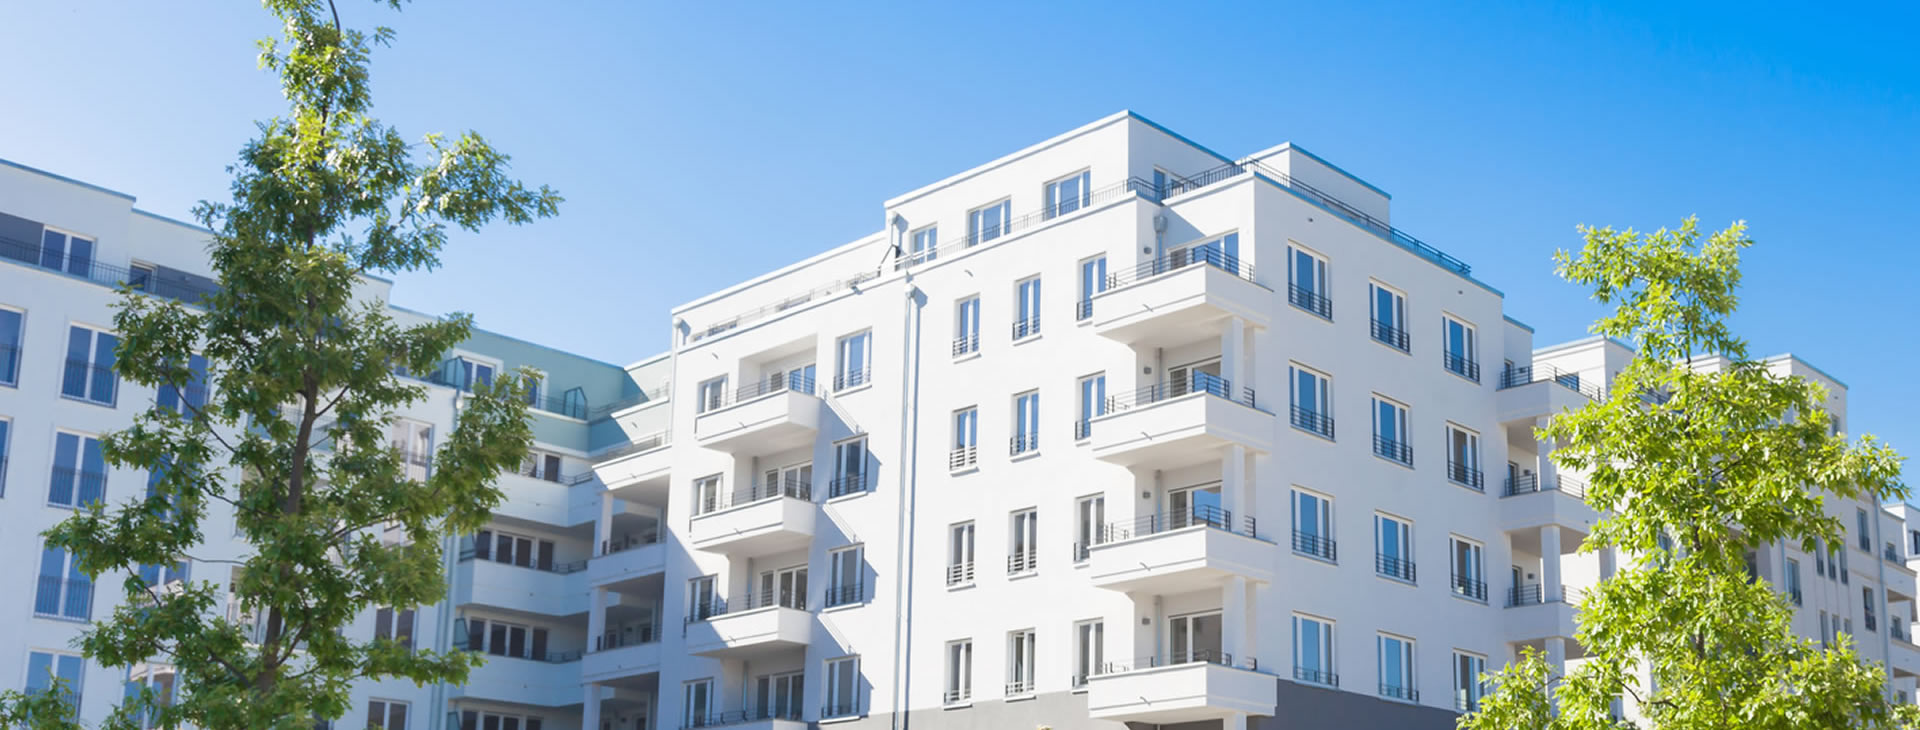 Immobilienbewertung zum Haus verkaufen in Pirna, Freital & Heidenau